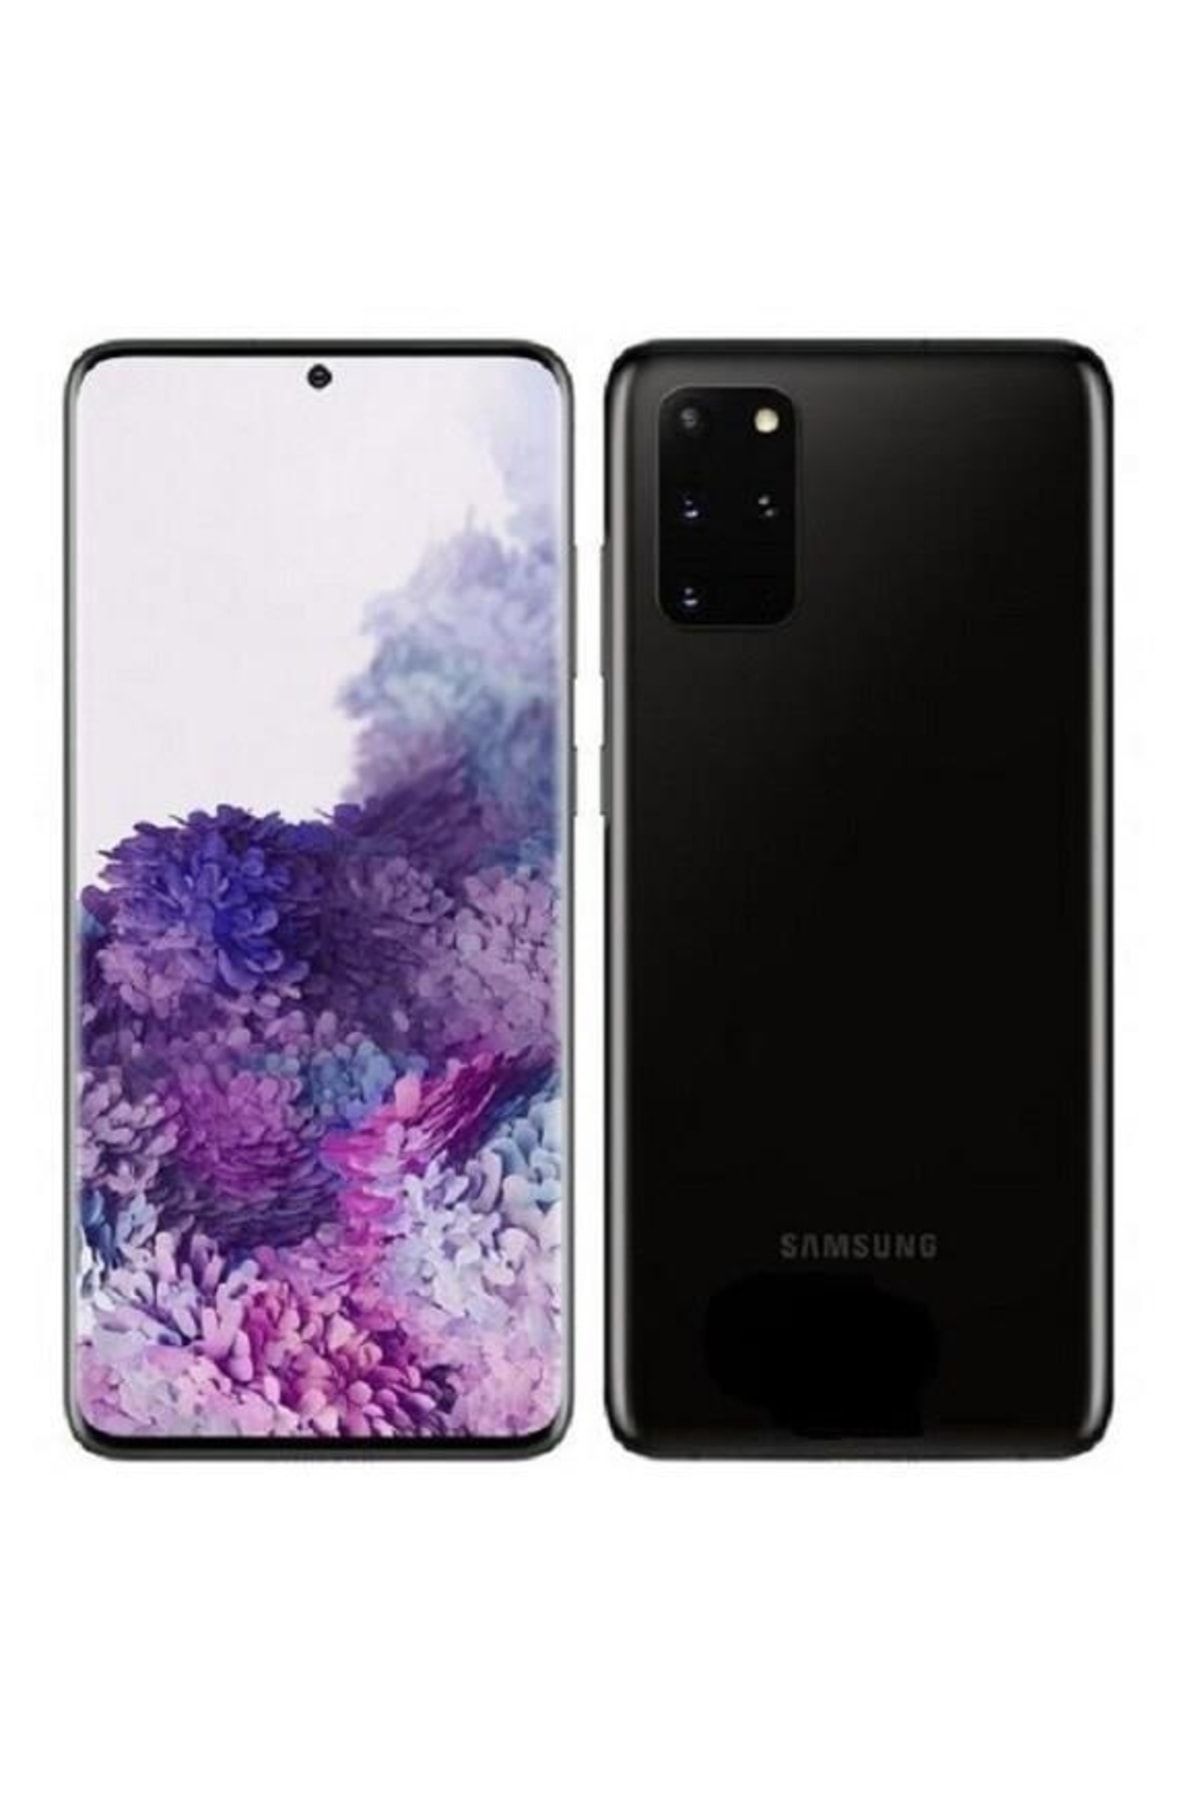 Samsung Yenilenmiş Galaxy S20 Plus Black 128 GB B Kalite (12 Ay Garantili)